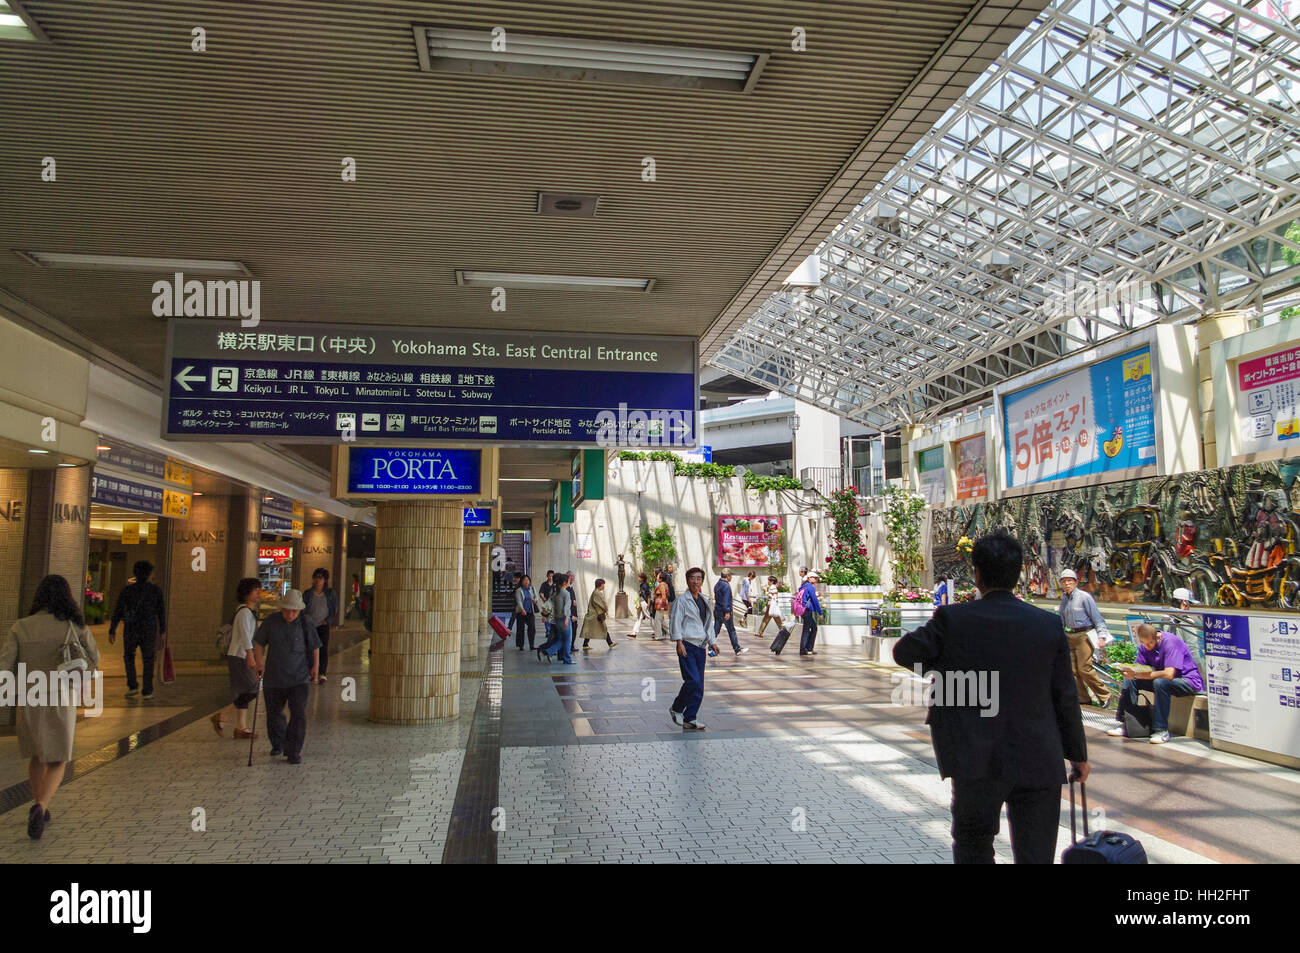 La explanada oriental y la entrada de la estación de tren de Yokohama, Yokohama, Japón. Foto de stock